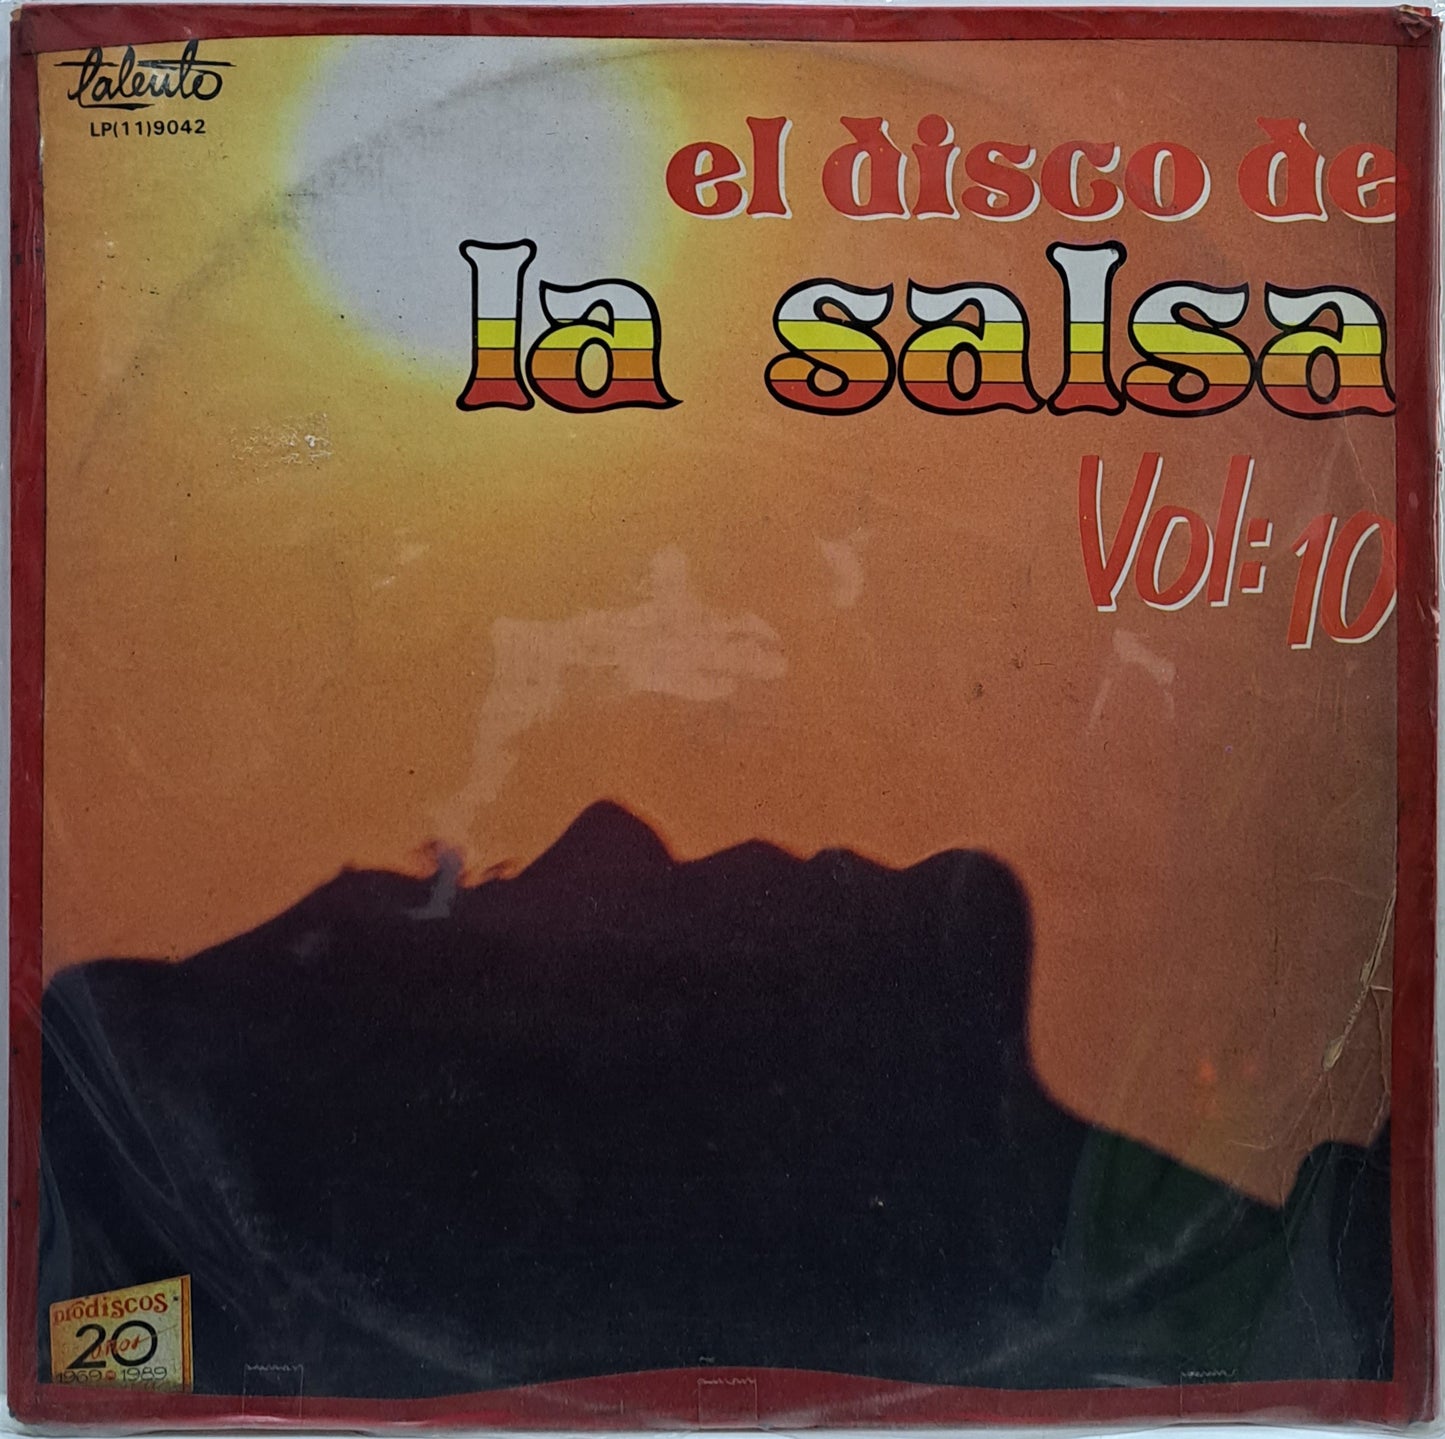 EL DISCO DE LA SALSA VOL 10 LP